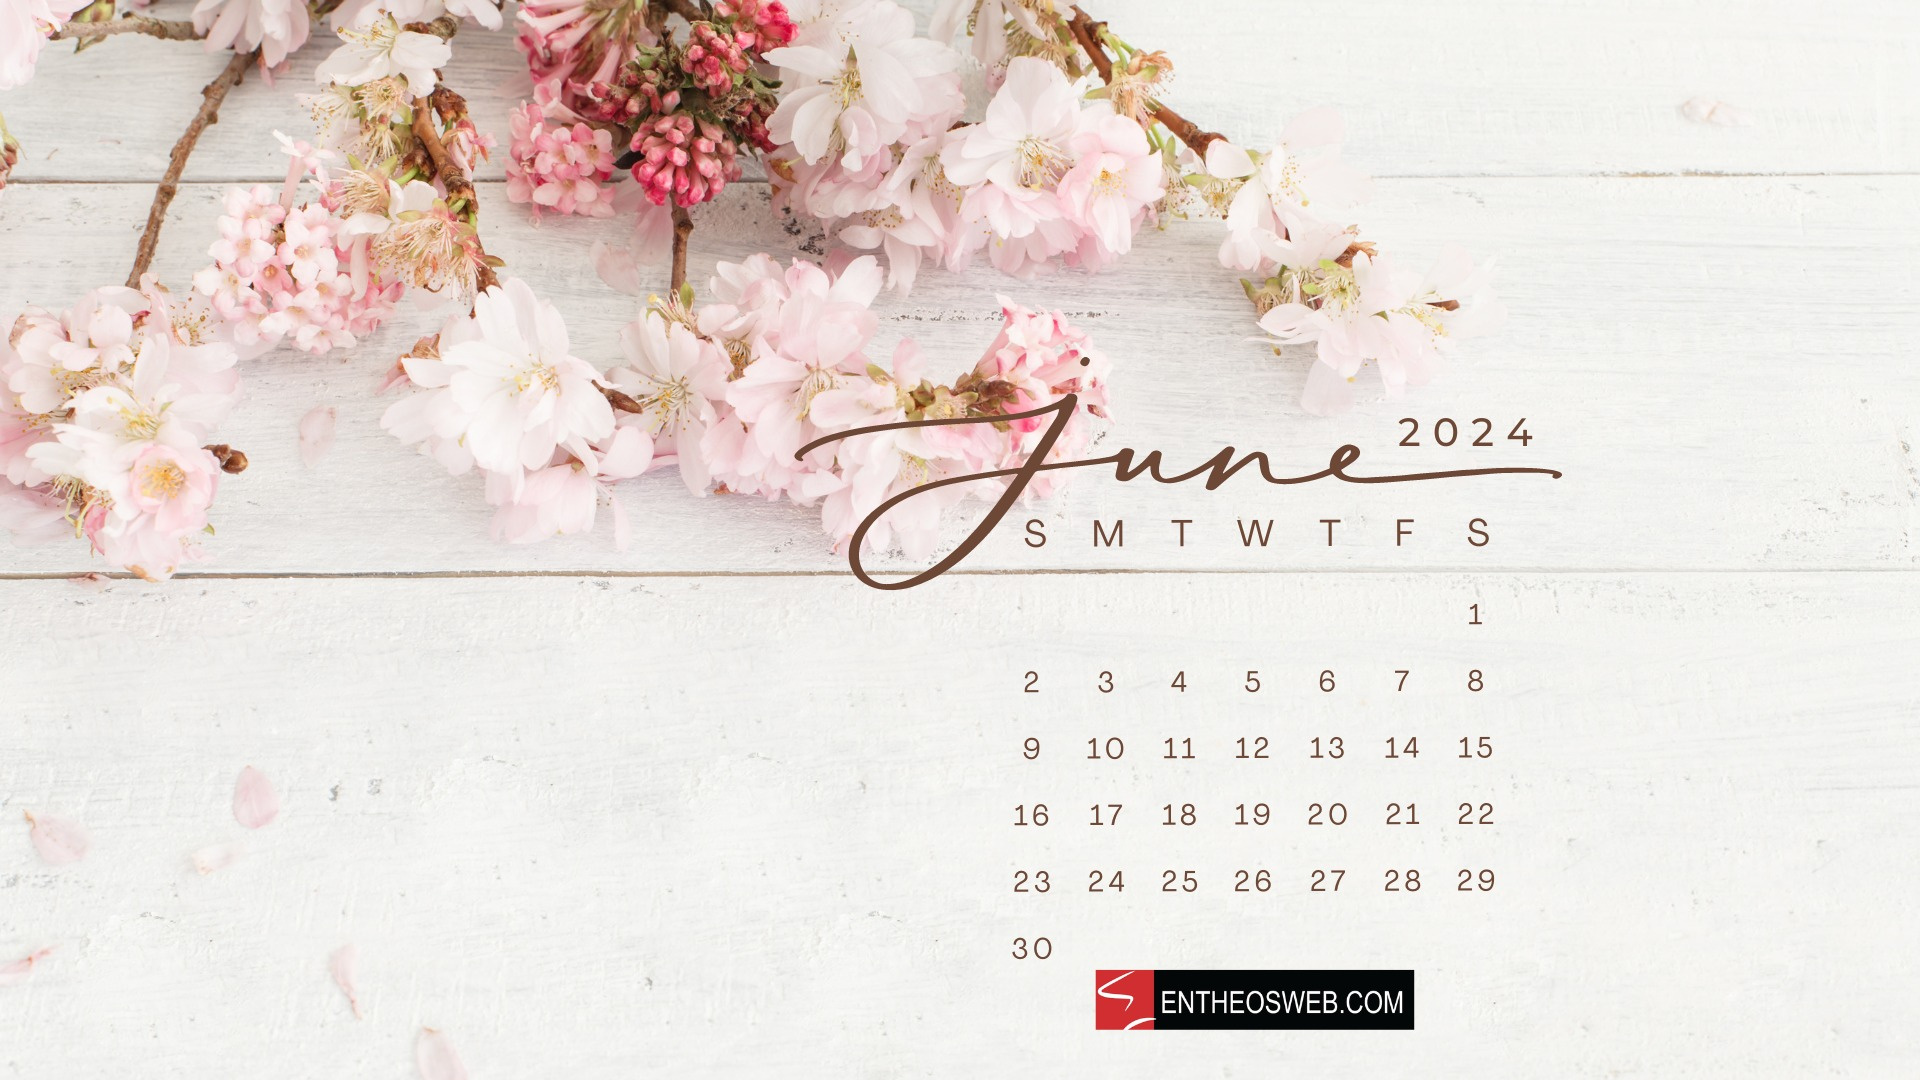 June 2024 Desktop Wallpaper Calendars | Entheosweb pertaining to June 2024 Calendar Desktop Wallpaper